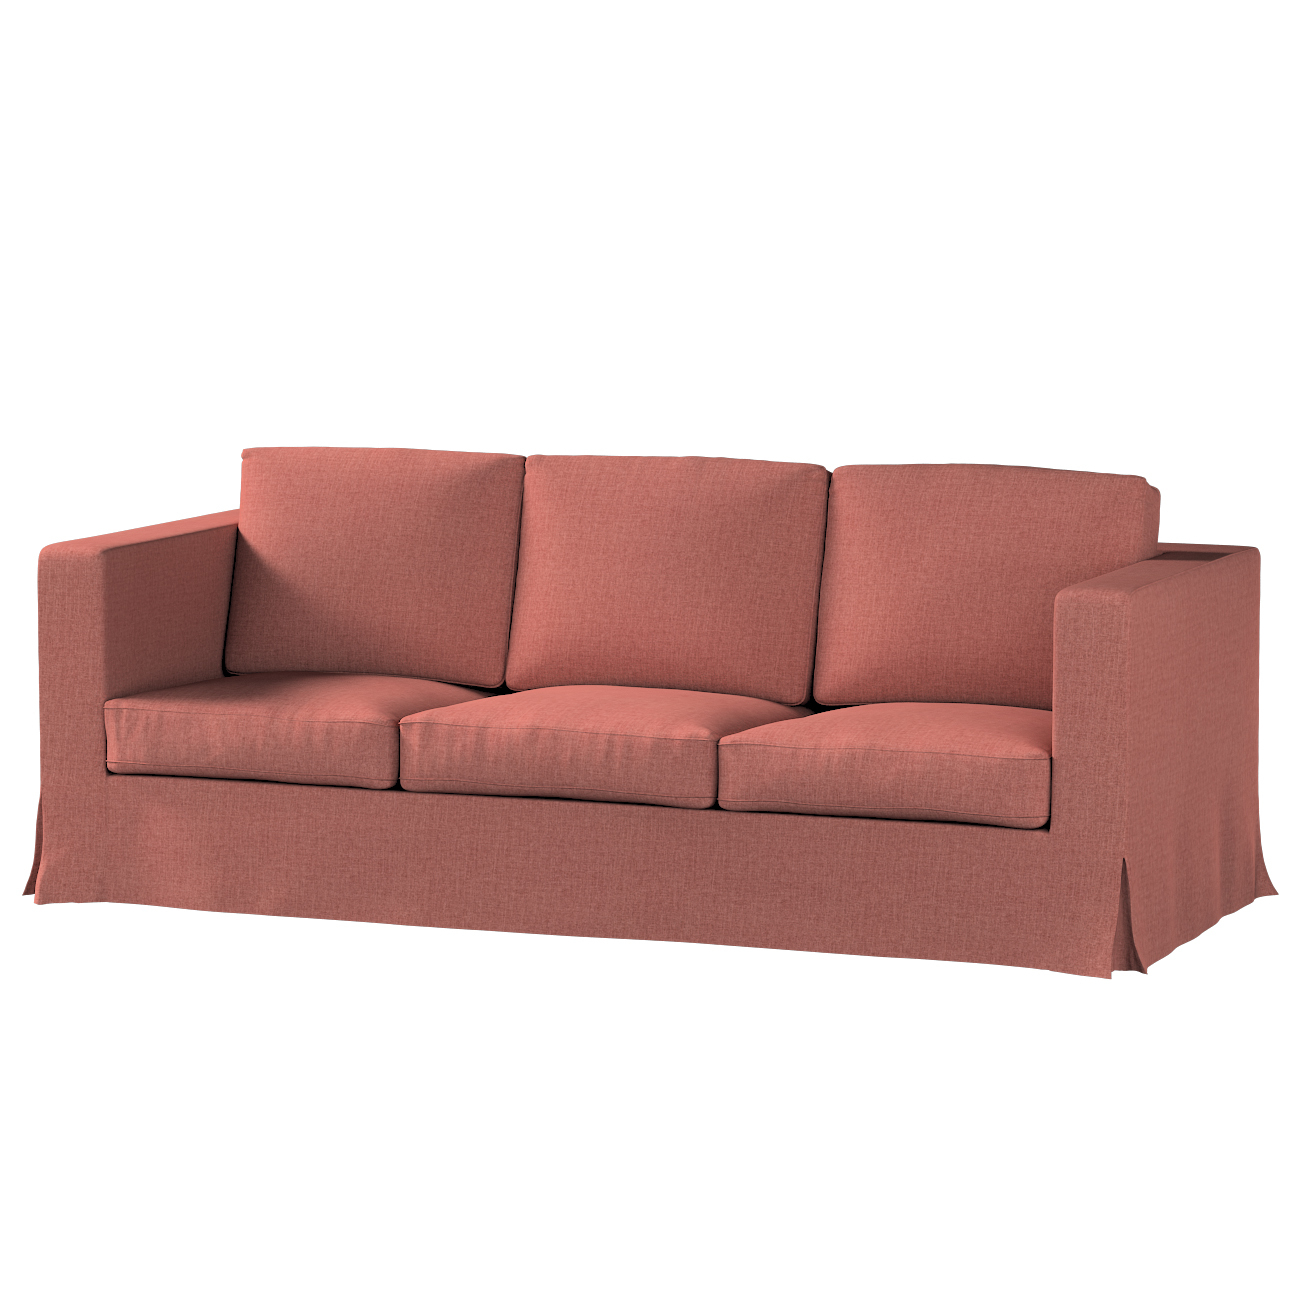 Bezug für Karlanda 3-Sitzer Sofa nicht ausklappbar, lang, cognac braun, Bez günstig online kaufen